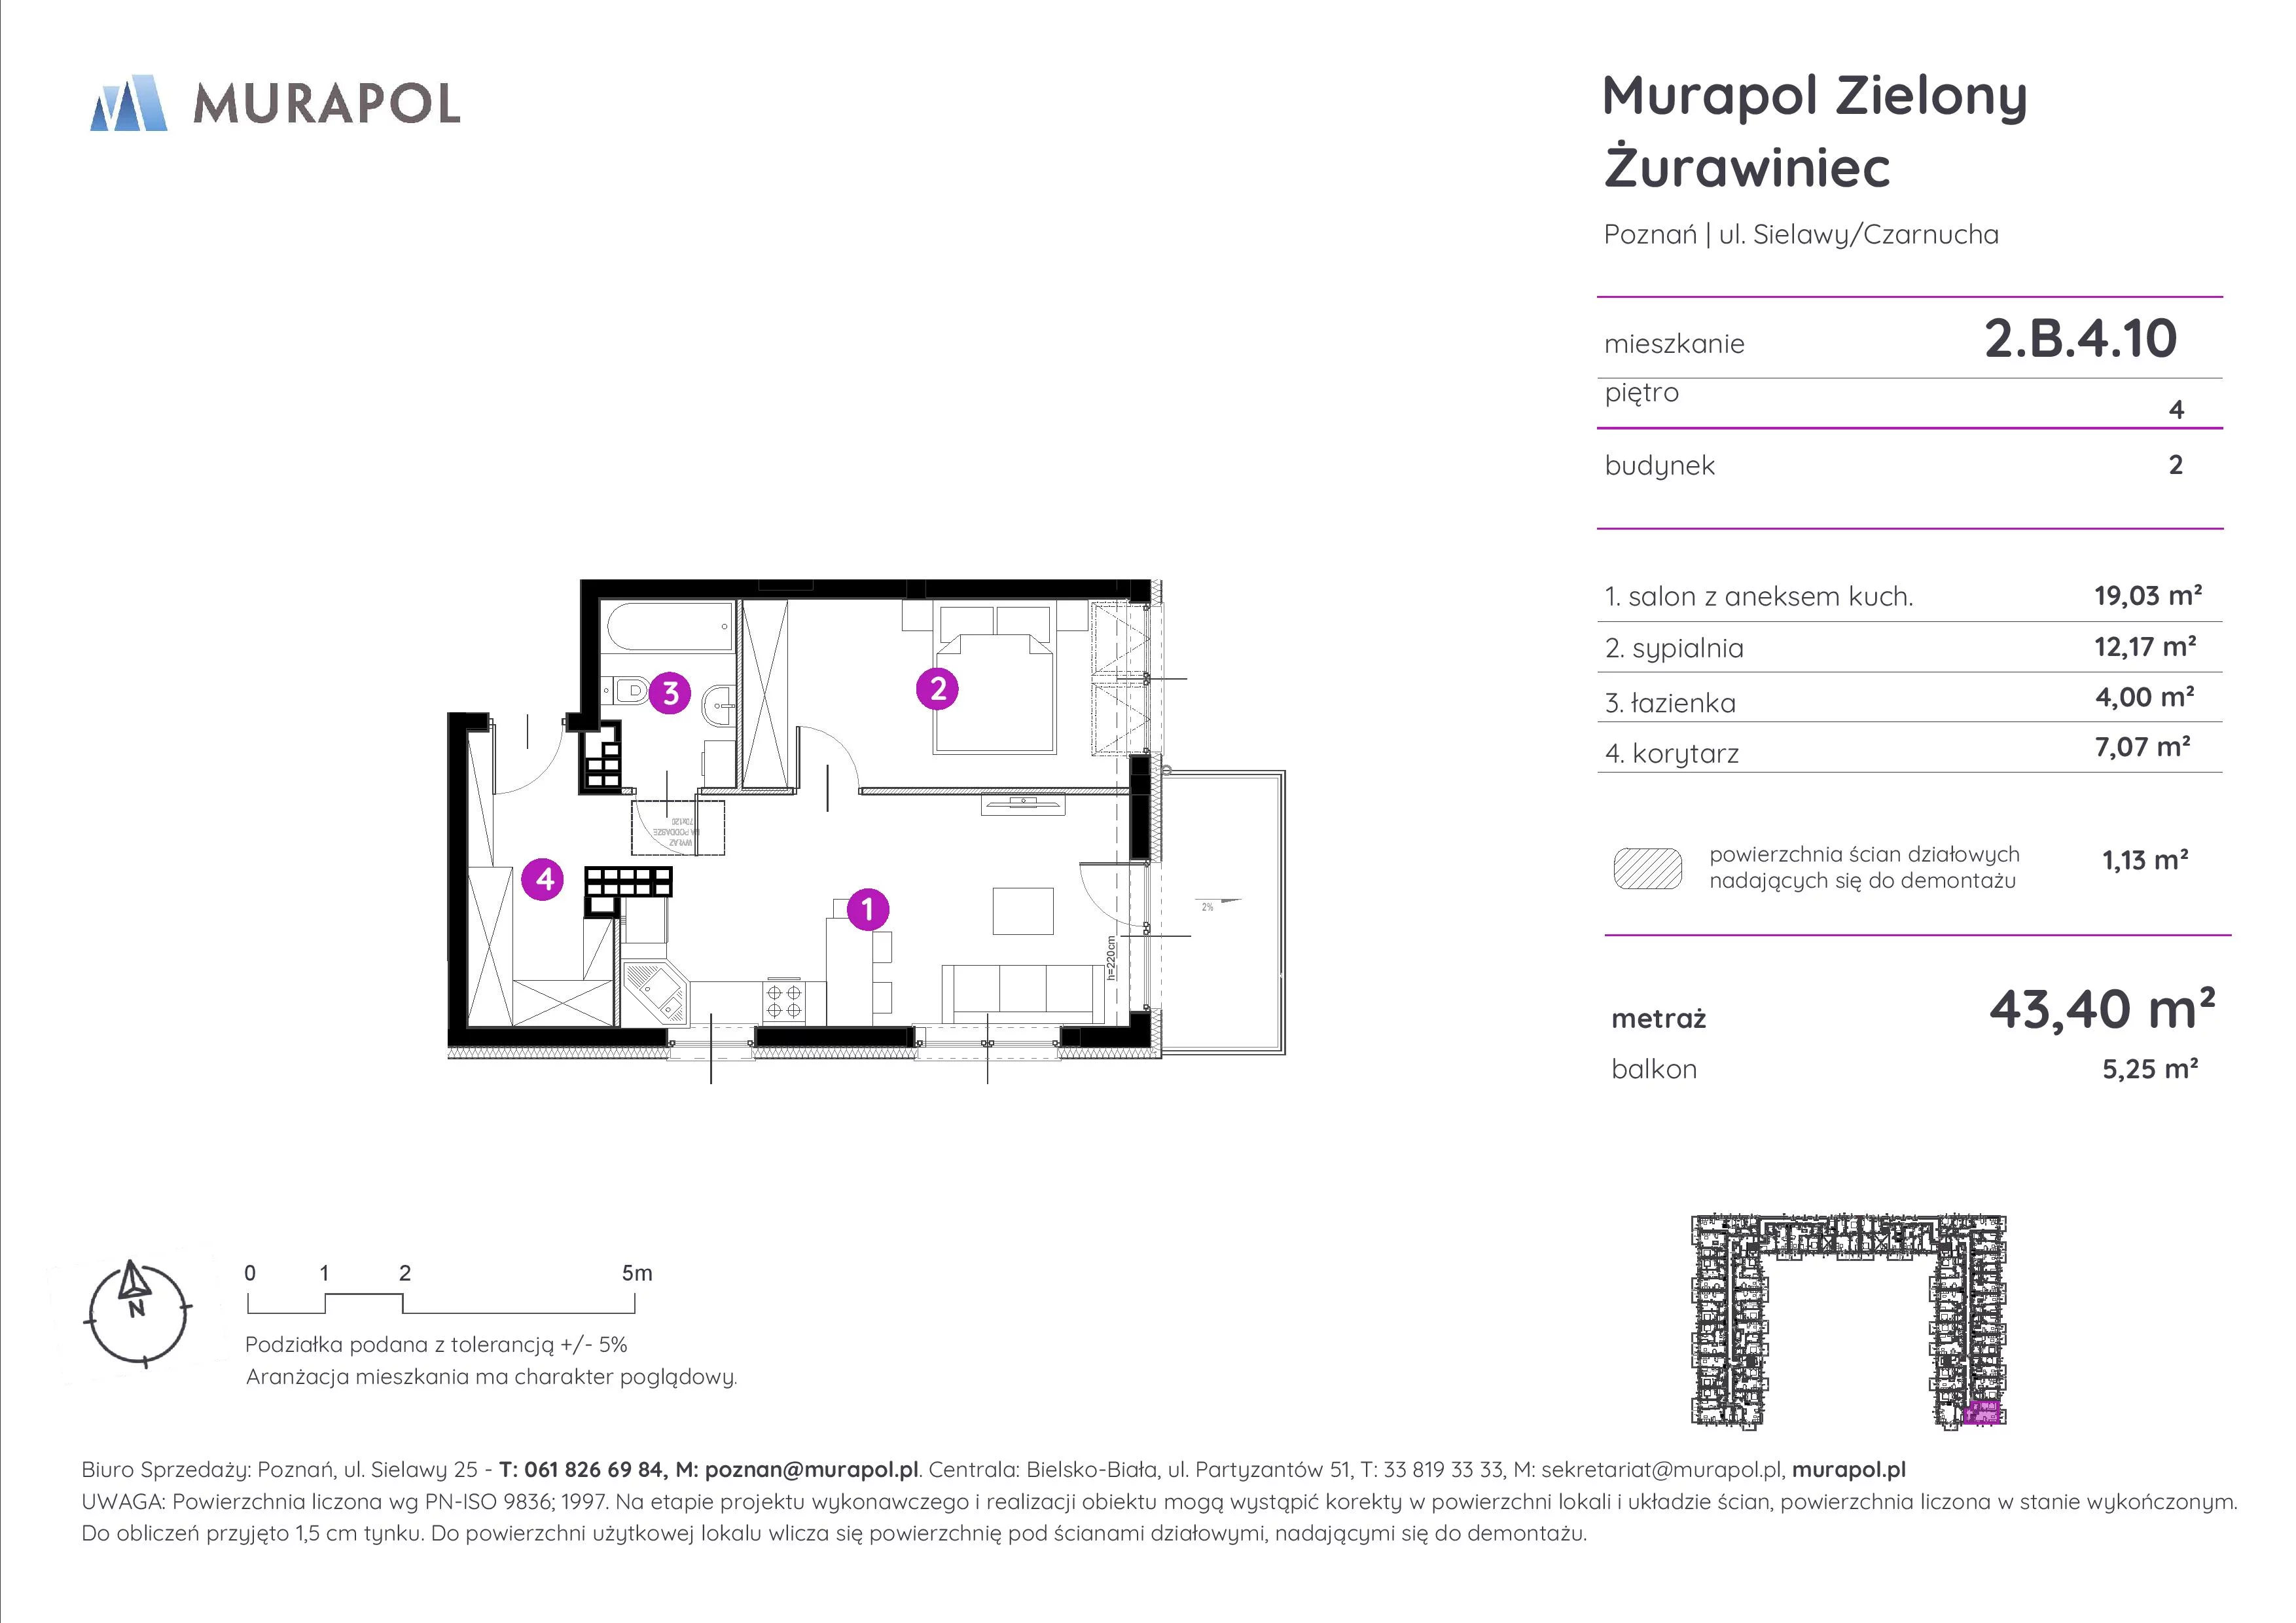 Mieszkanie 43,40 m², piętro 4, oferta nr 2.B.4.10, Murapol Zielony Żurawiniec, Poznań, Naramowice, ul. Sielawy